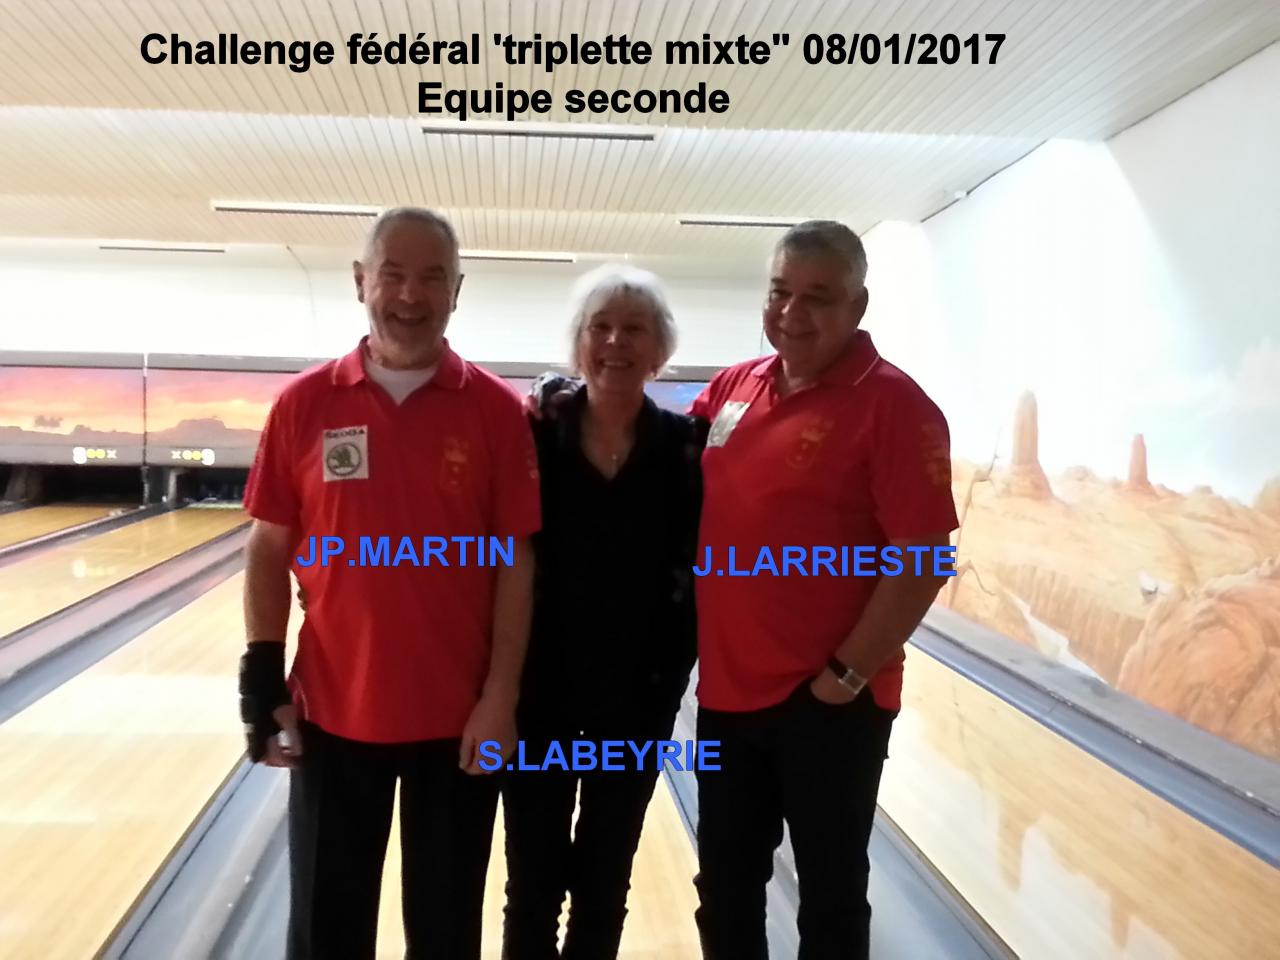 Challenge fédéral triplette mixte